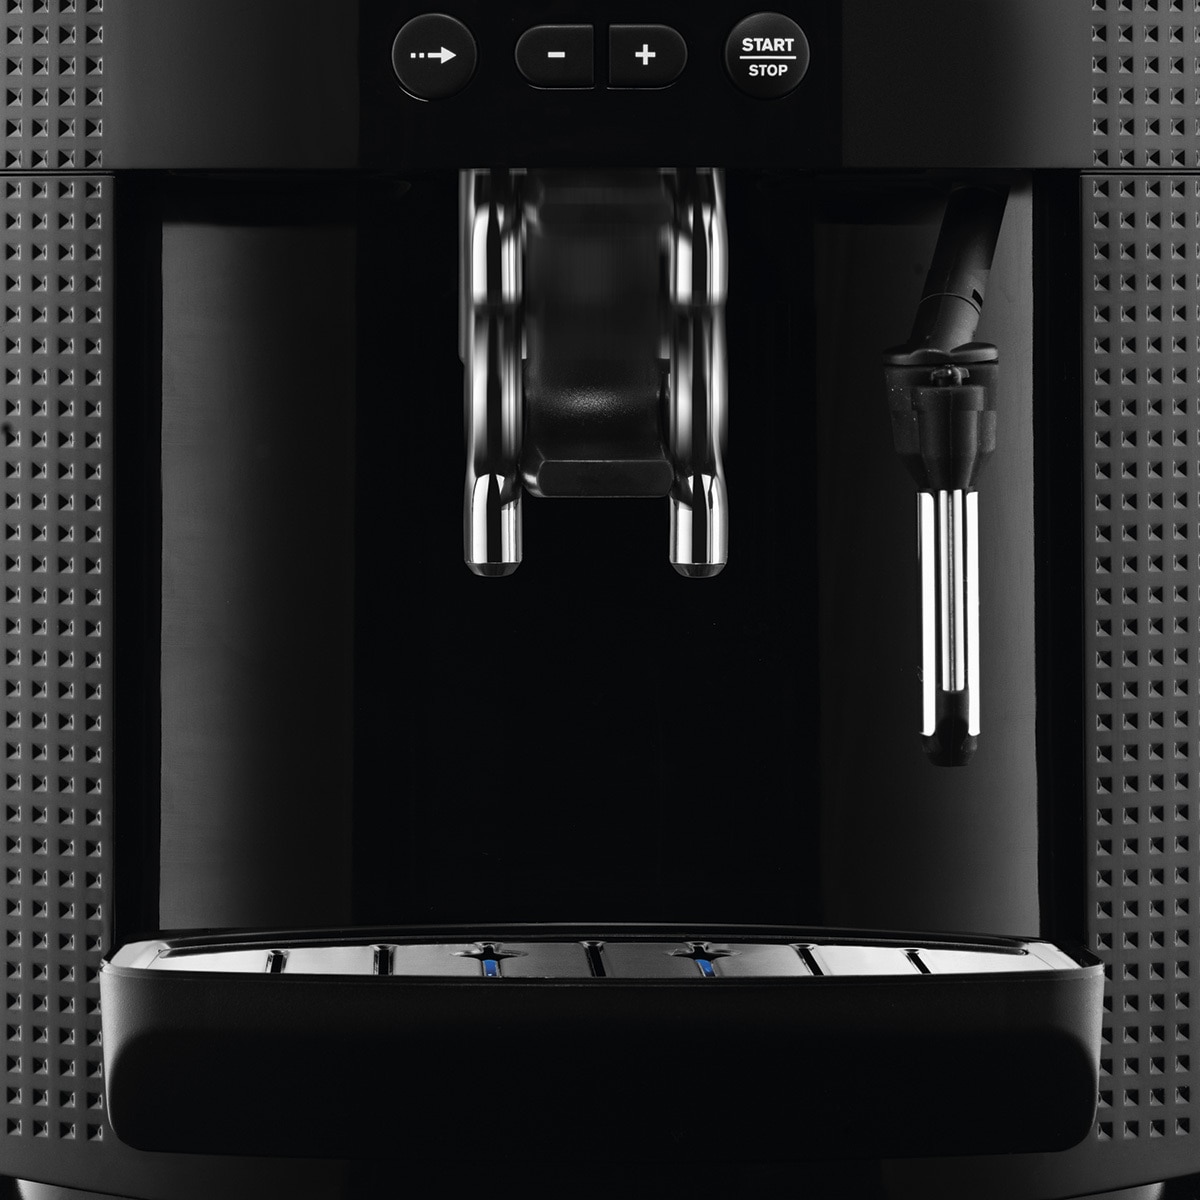 Krups tiene una cafetera superautomática que prepara espressos